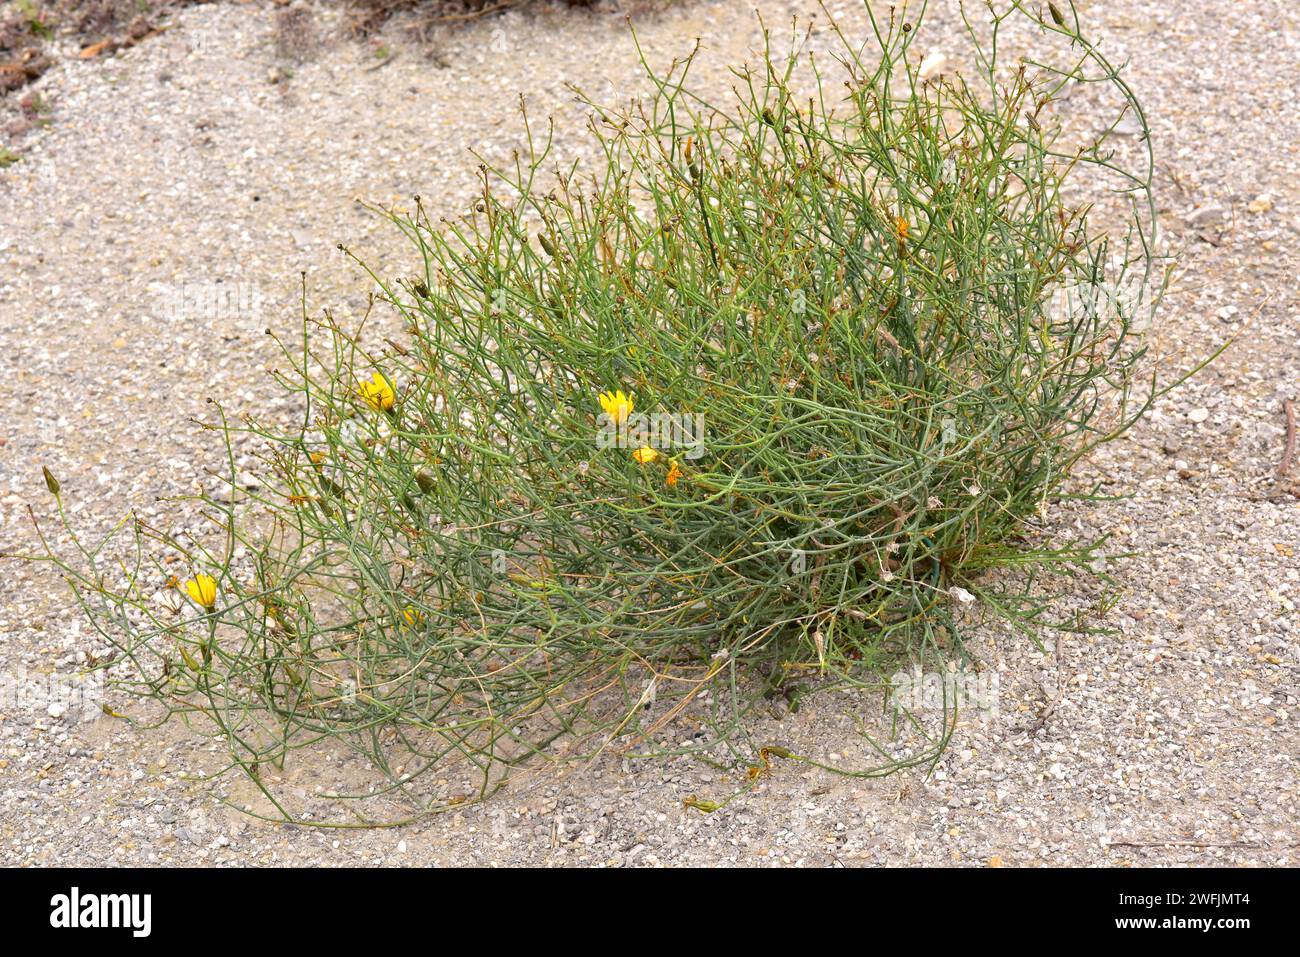 Lechuguilla falsa (Launaea fragilis) è un'erba perenne originaria della Spagna orientale e dell'Africa nordoccidentale. Pianta fiorente. Foto Stock